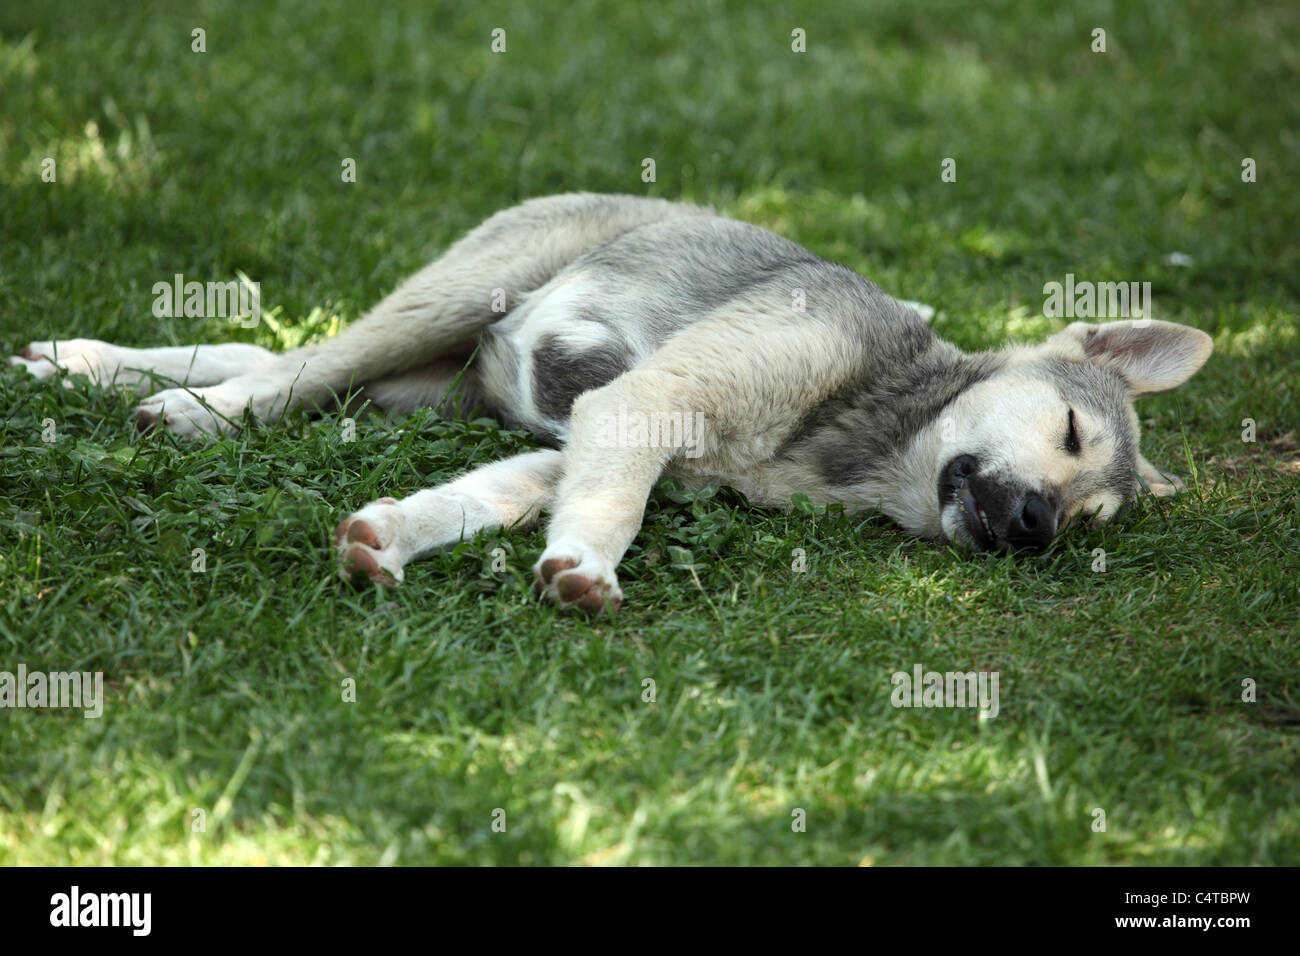 Mignon chien dormir sur l'herbe Banque D'Images